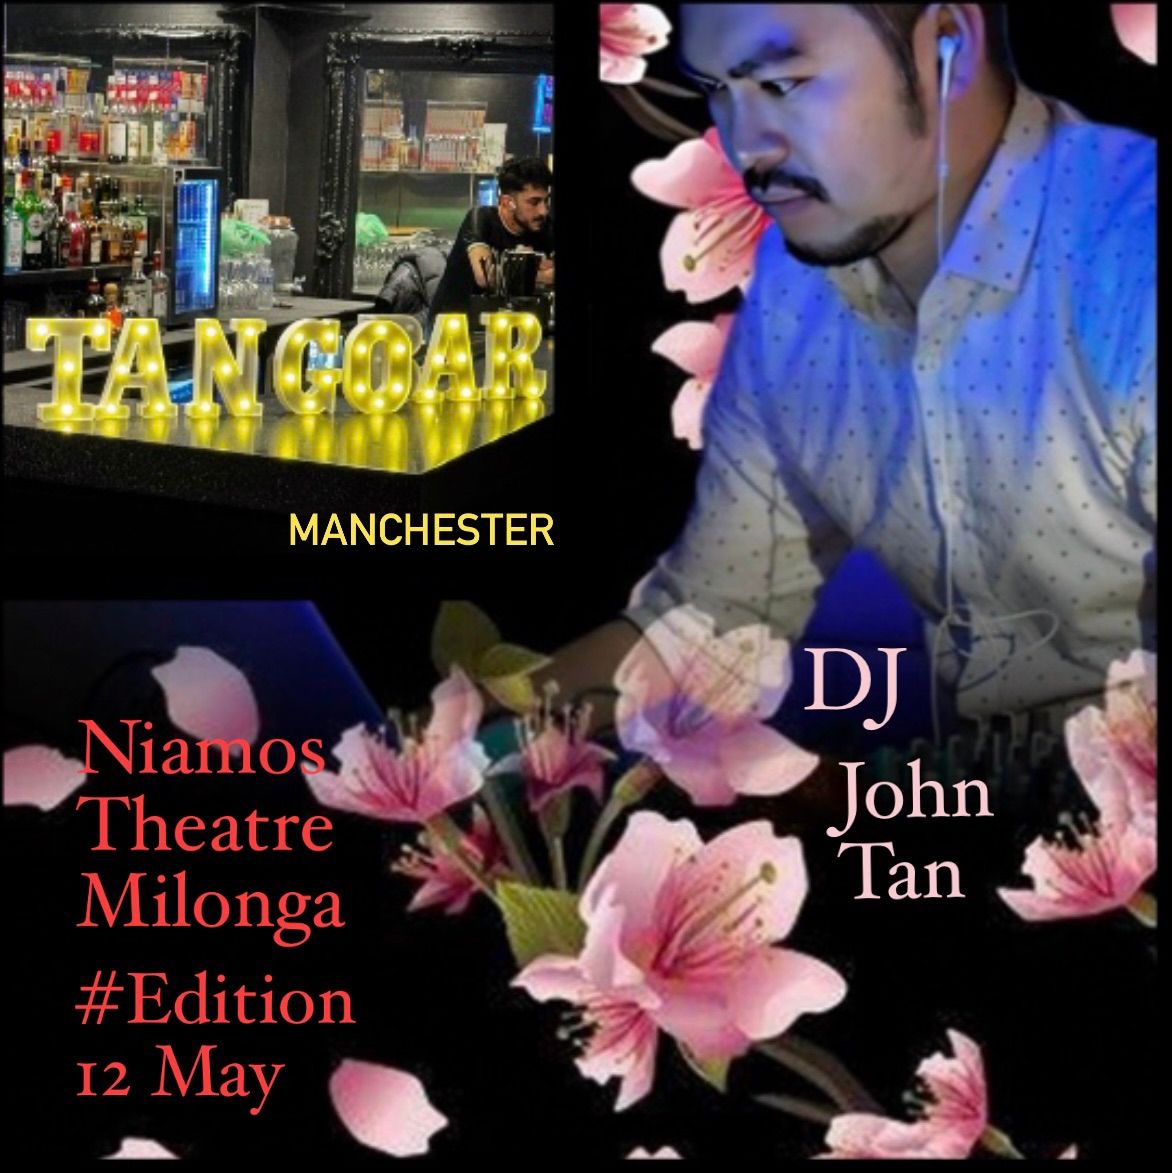 TangoBar Manchester Presents - NIAMOS Milonga - May edition!